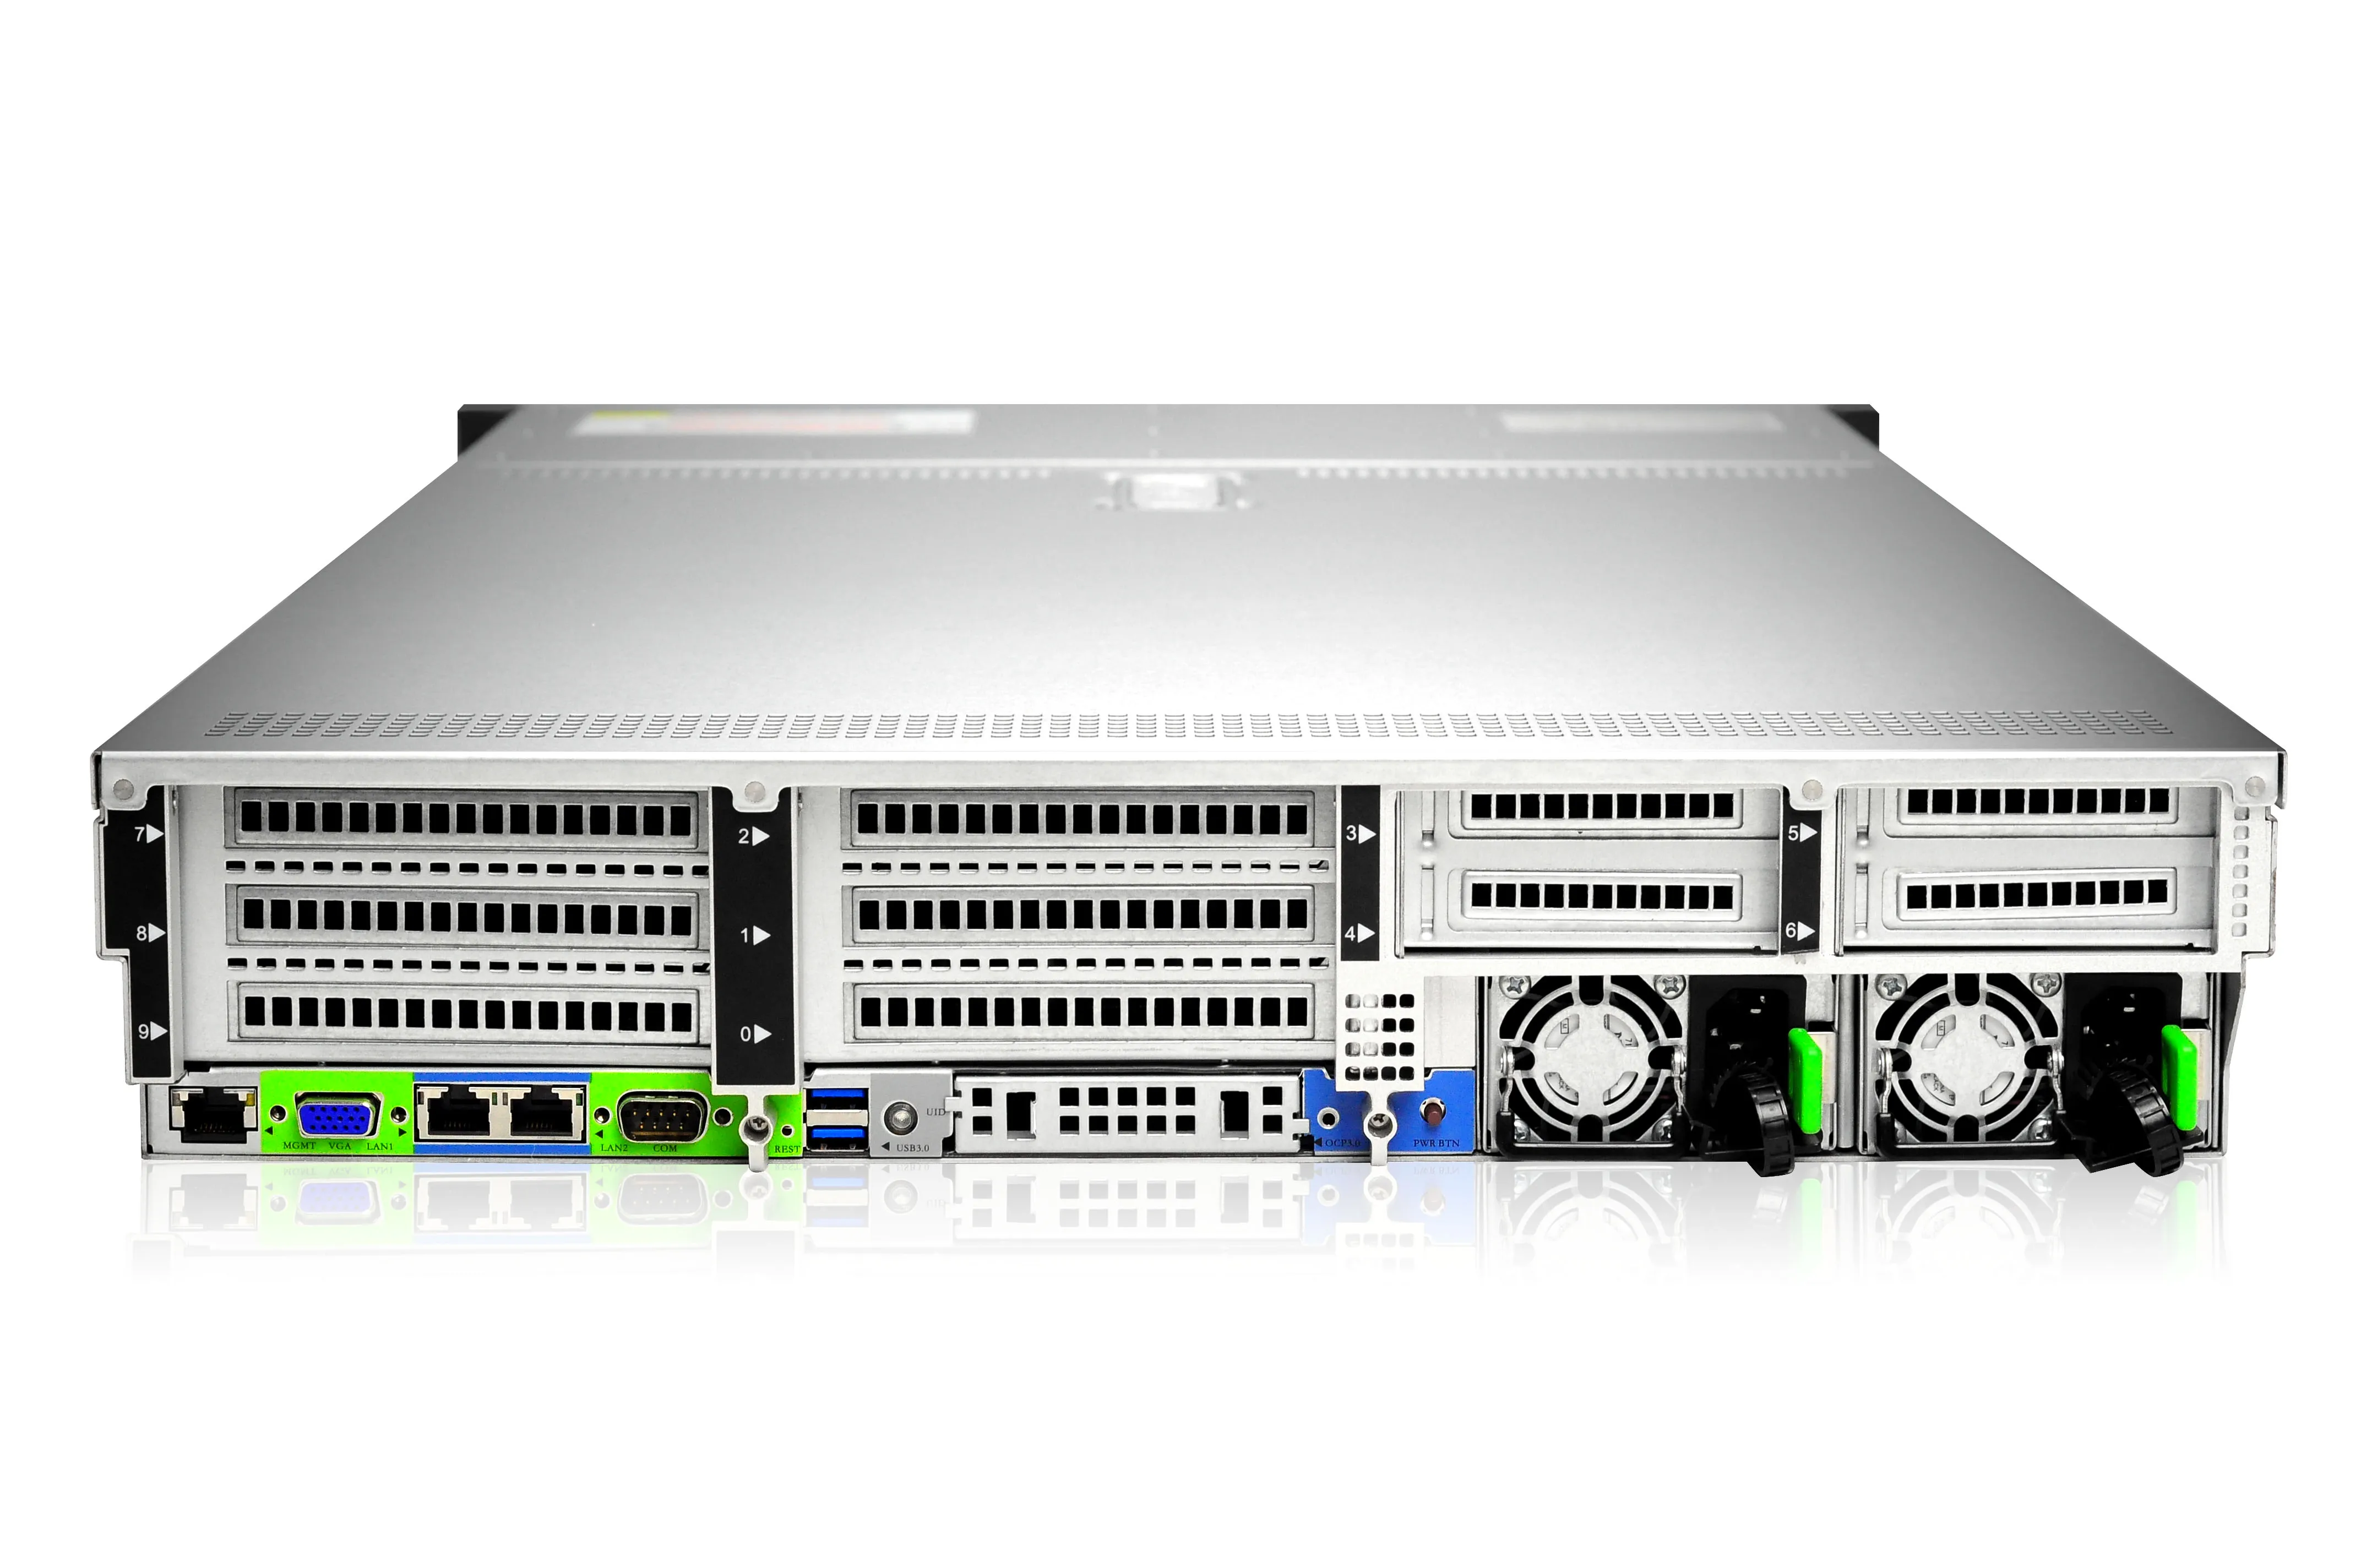 Серверная платформа 2u QSRV-260802. СХД 2u, QSRV-2516. Сервер 1u QSRV 161002 10 2.5 HDD; 8 32gb ddr4 RDIMM 29. HOTSWAP sl201-3.5-mm Gooxi. Amd server